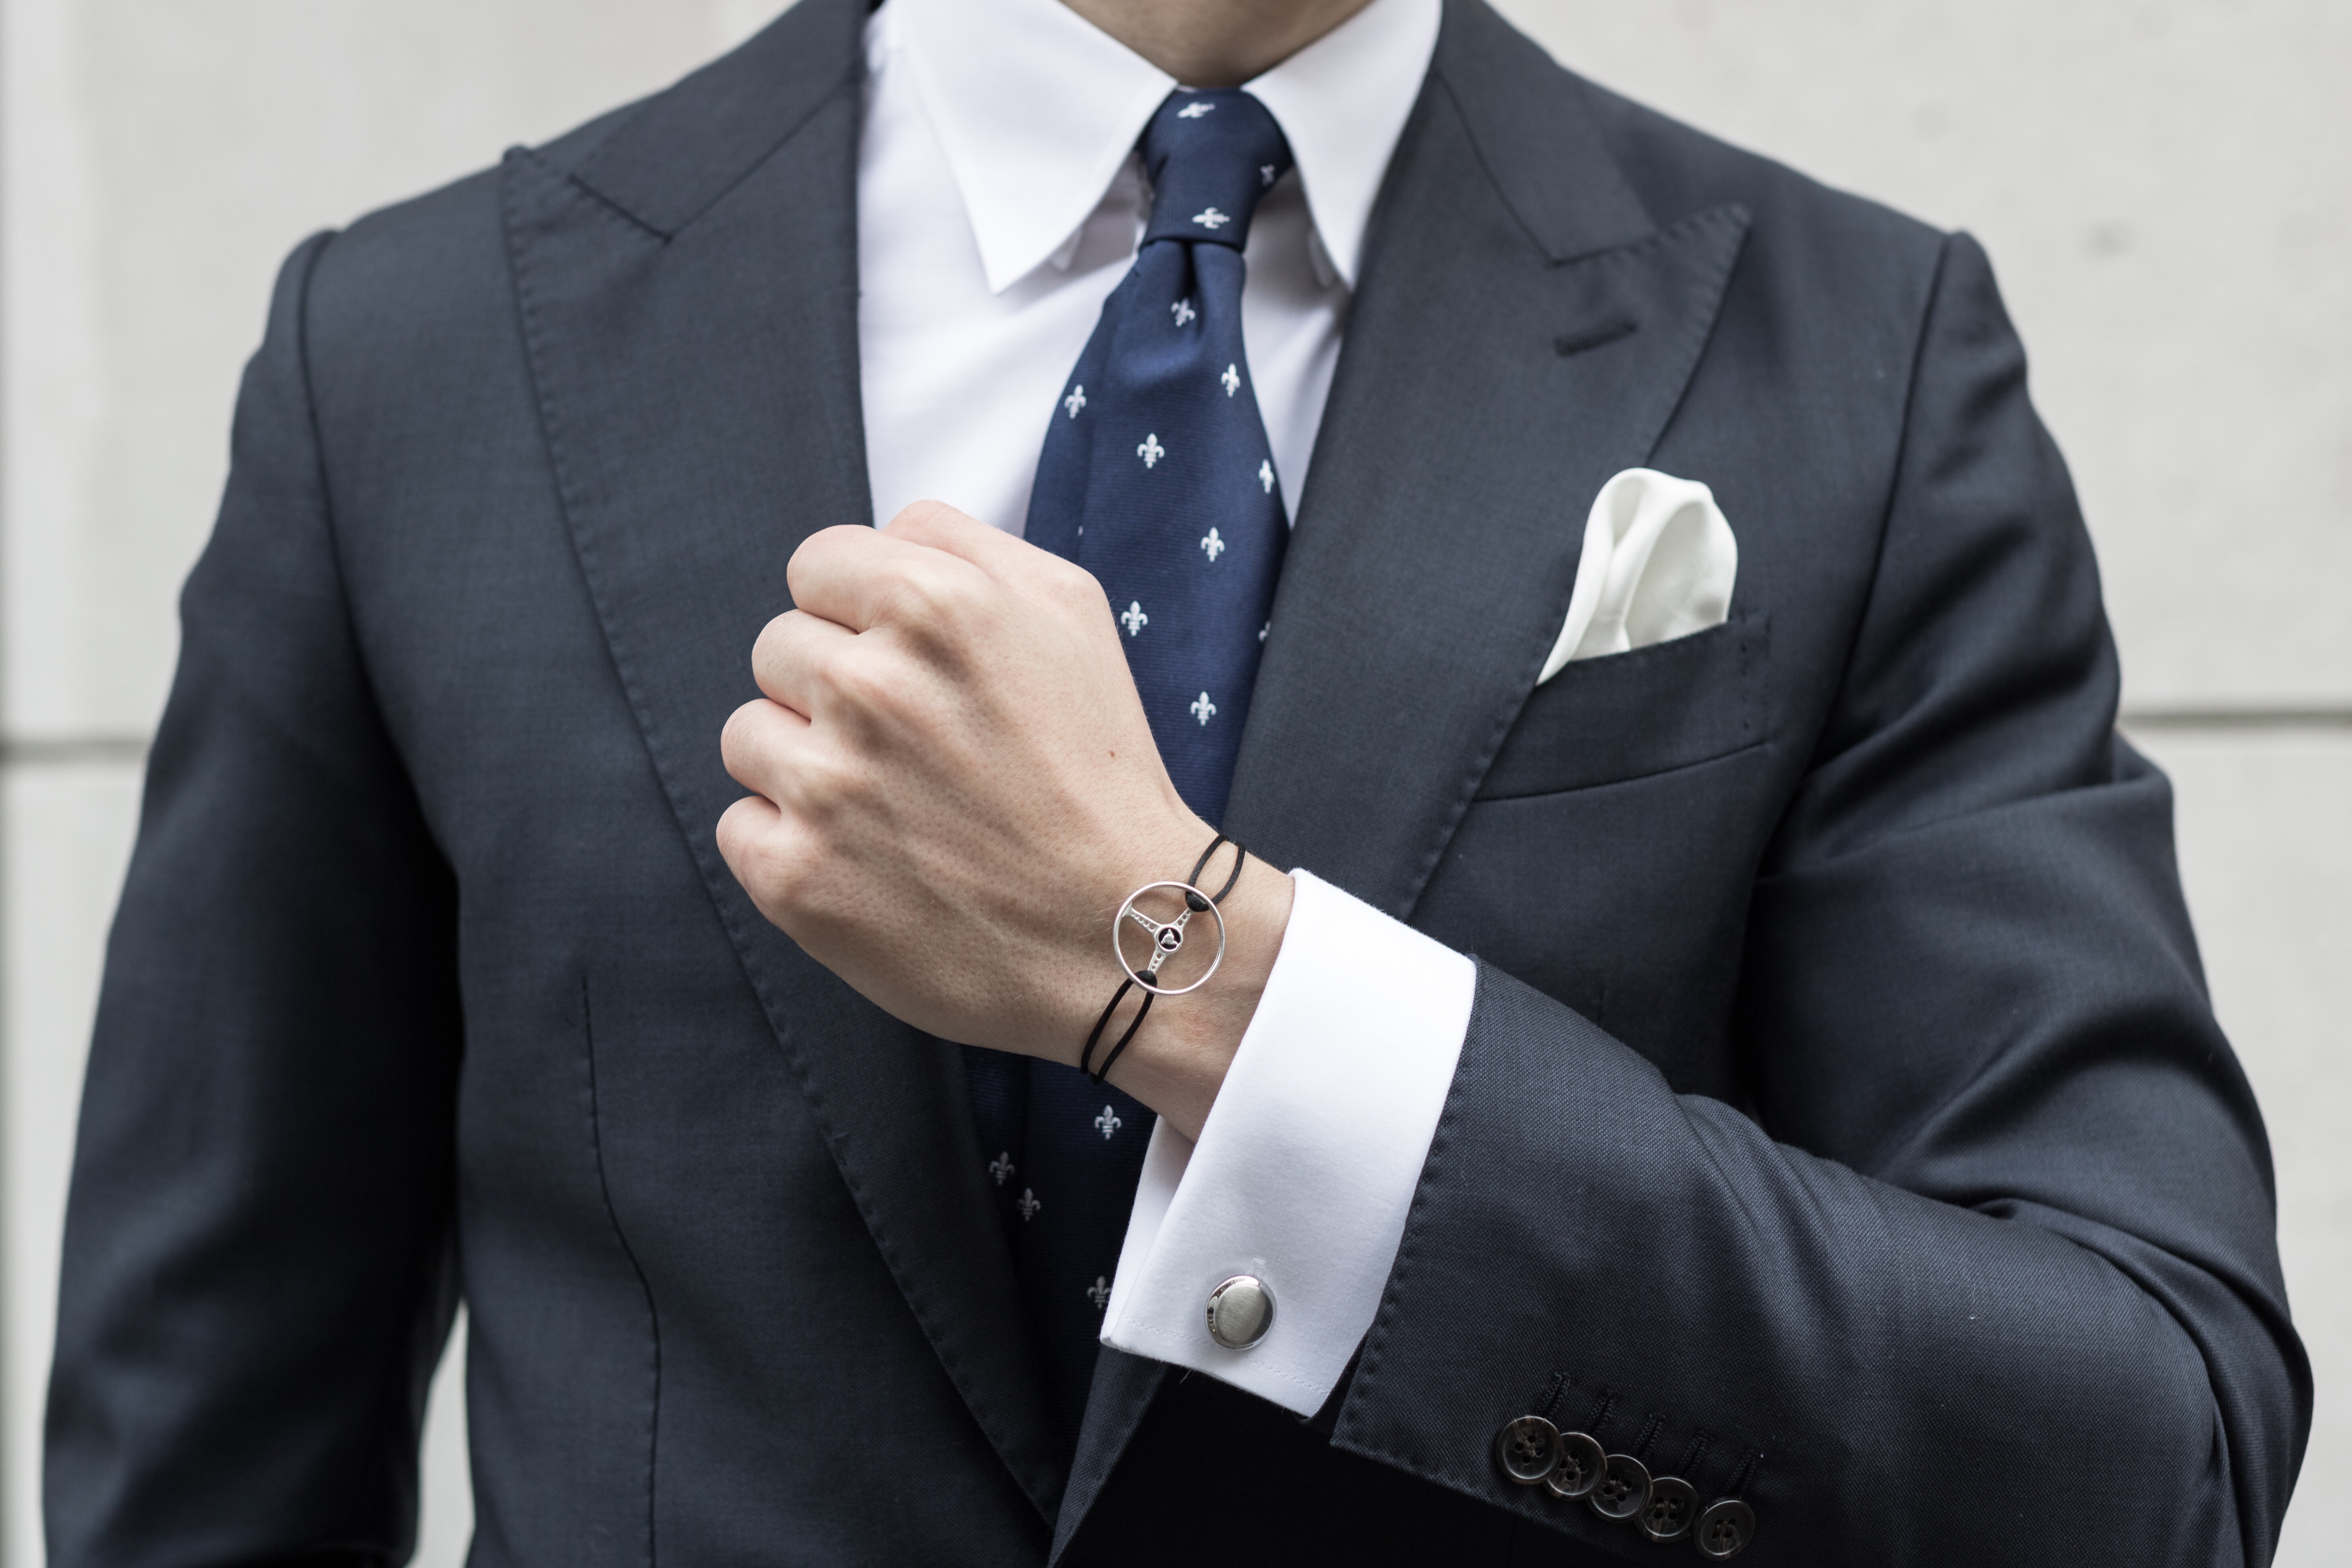 the mechanist bracelet london gentleman style blogger mathias le fevre suit tie luxury